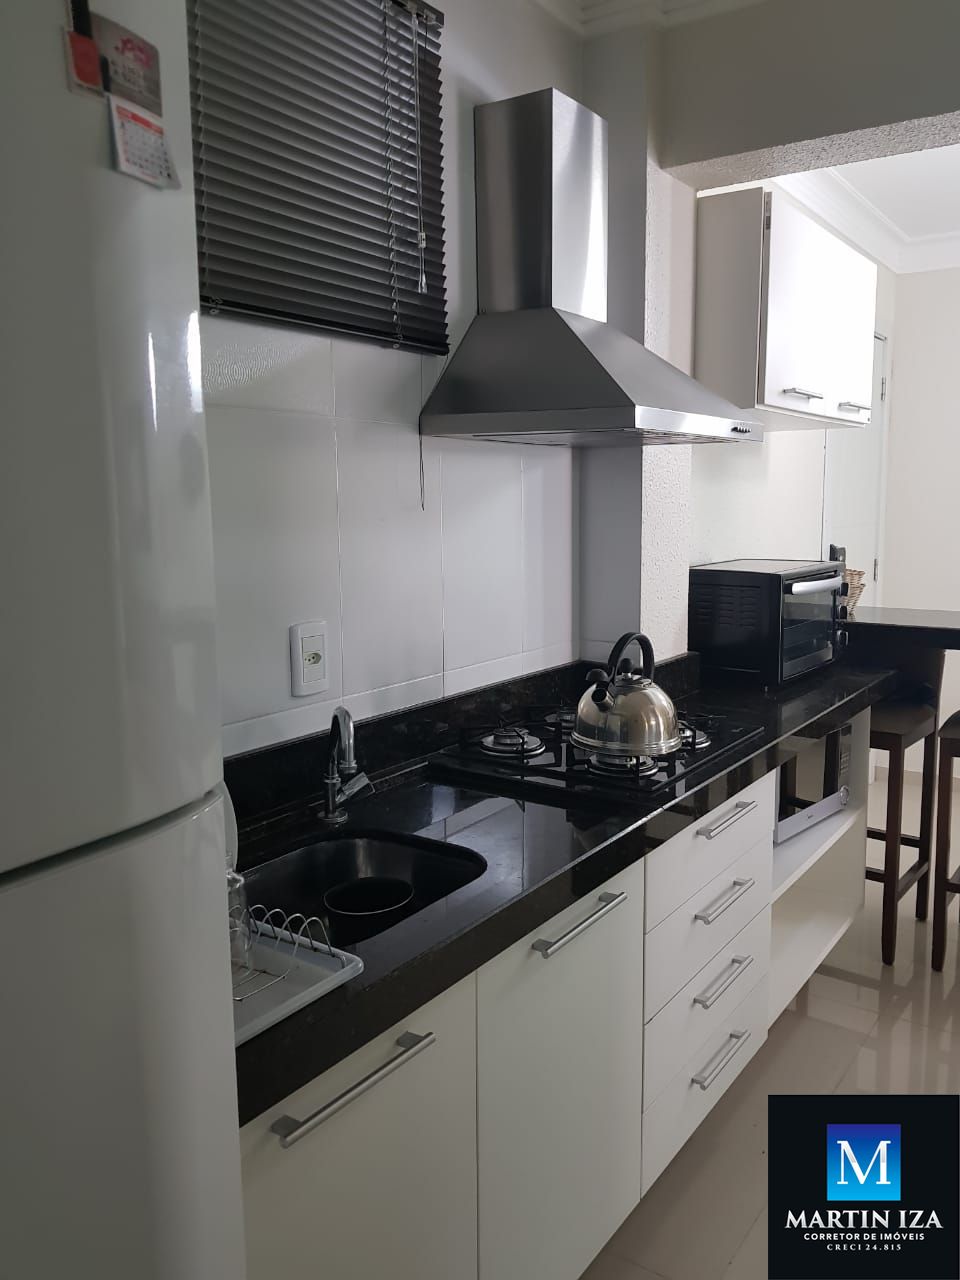 Apartamento com 1 Dormitórios para alugar, 44 m² por R$ 450,00